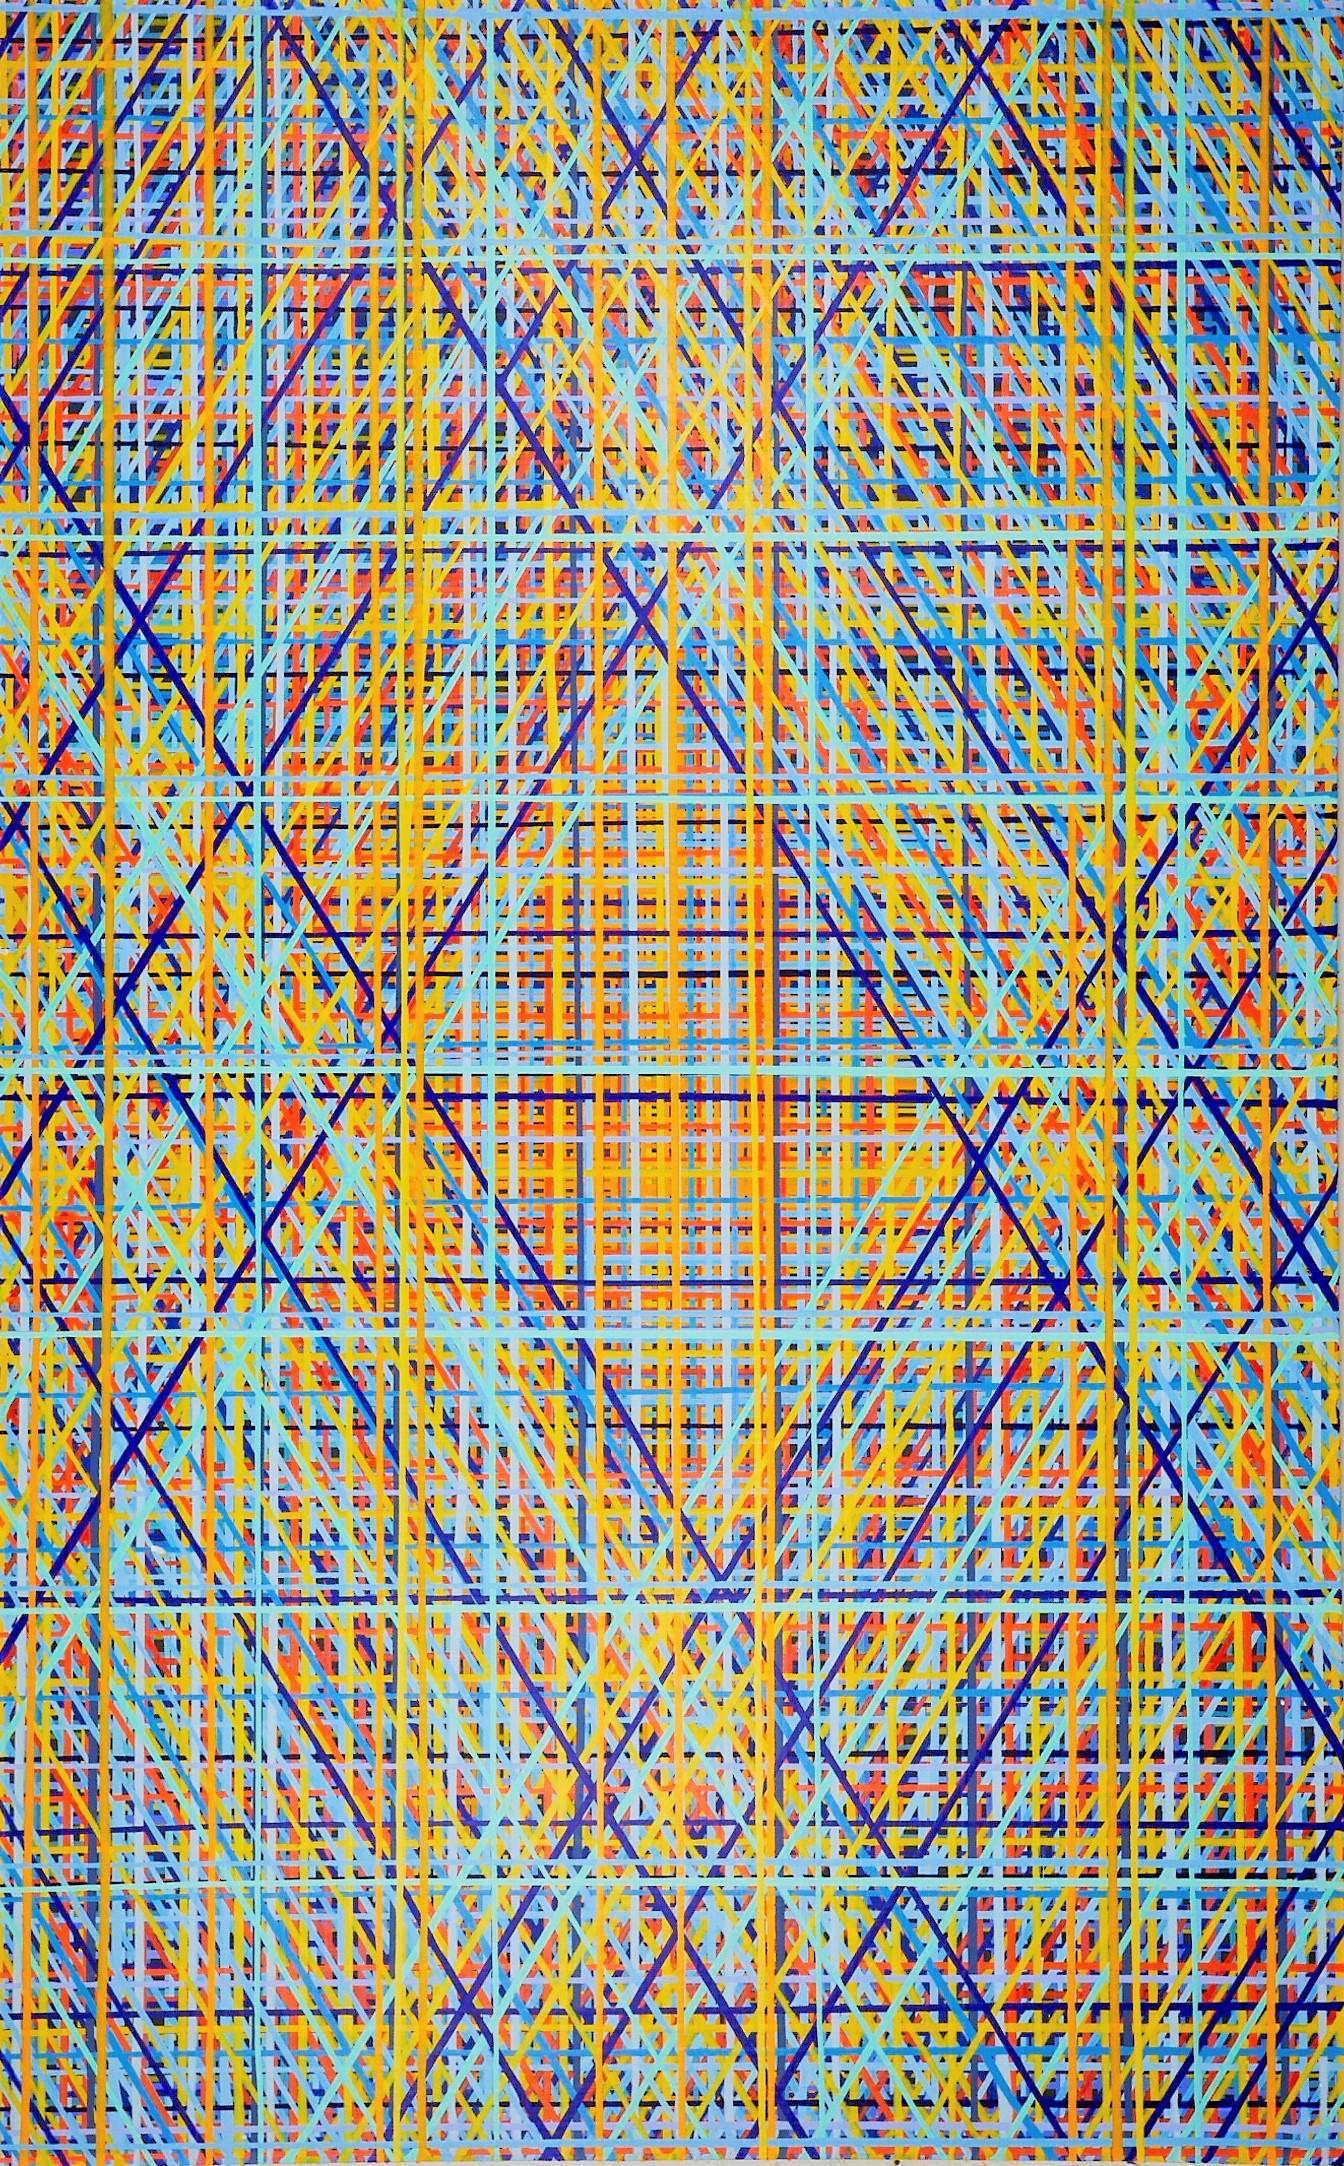 "Süßester Niedergang"
Acryl auf Leinwand
96 x 60 Zoll.

Wiederholte Methode, Farbe zu tropfen, um ein Gefühl von Tiefe zu erzeugen. Die Schwerkraft nutzen, um sich wiederholende Linien aus hellen Tönen zu schaffen. Kunstwerke von Jon James.

Siehe